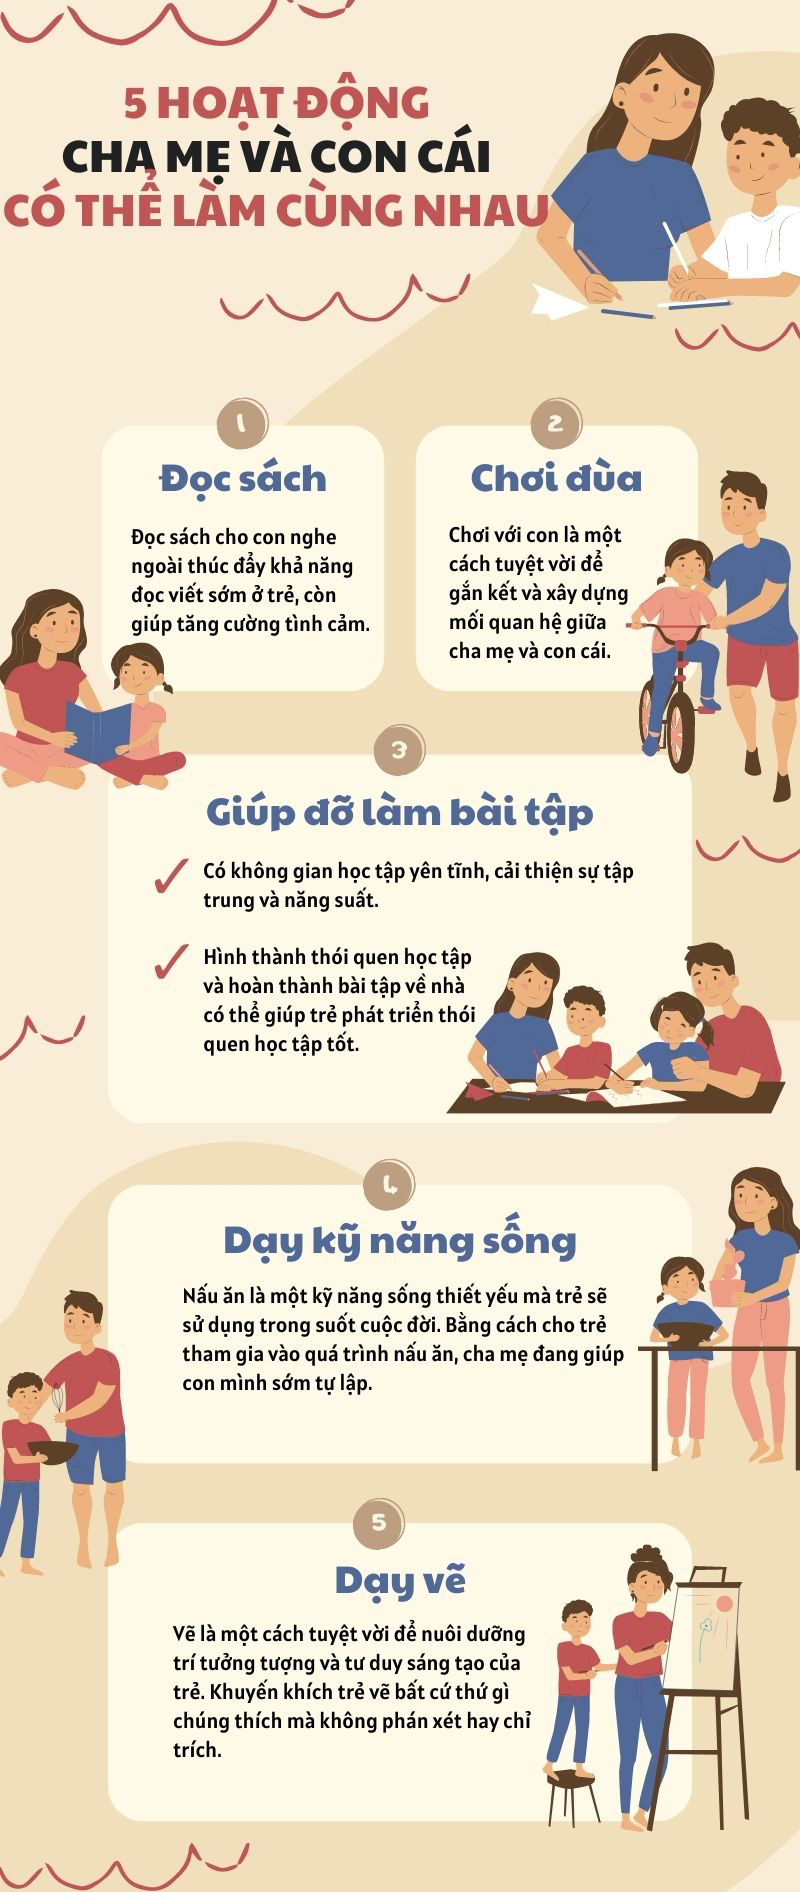 5 hoạt động cha mẹ và con cái có thể làm cùng nhau giúp gắn kết tình cảm - Ảnh 1.